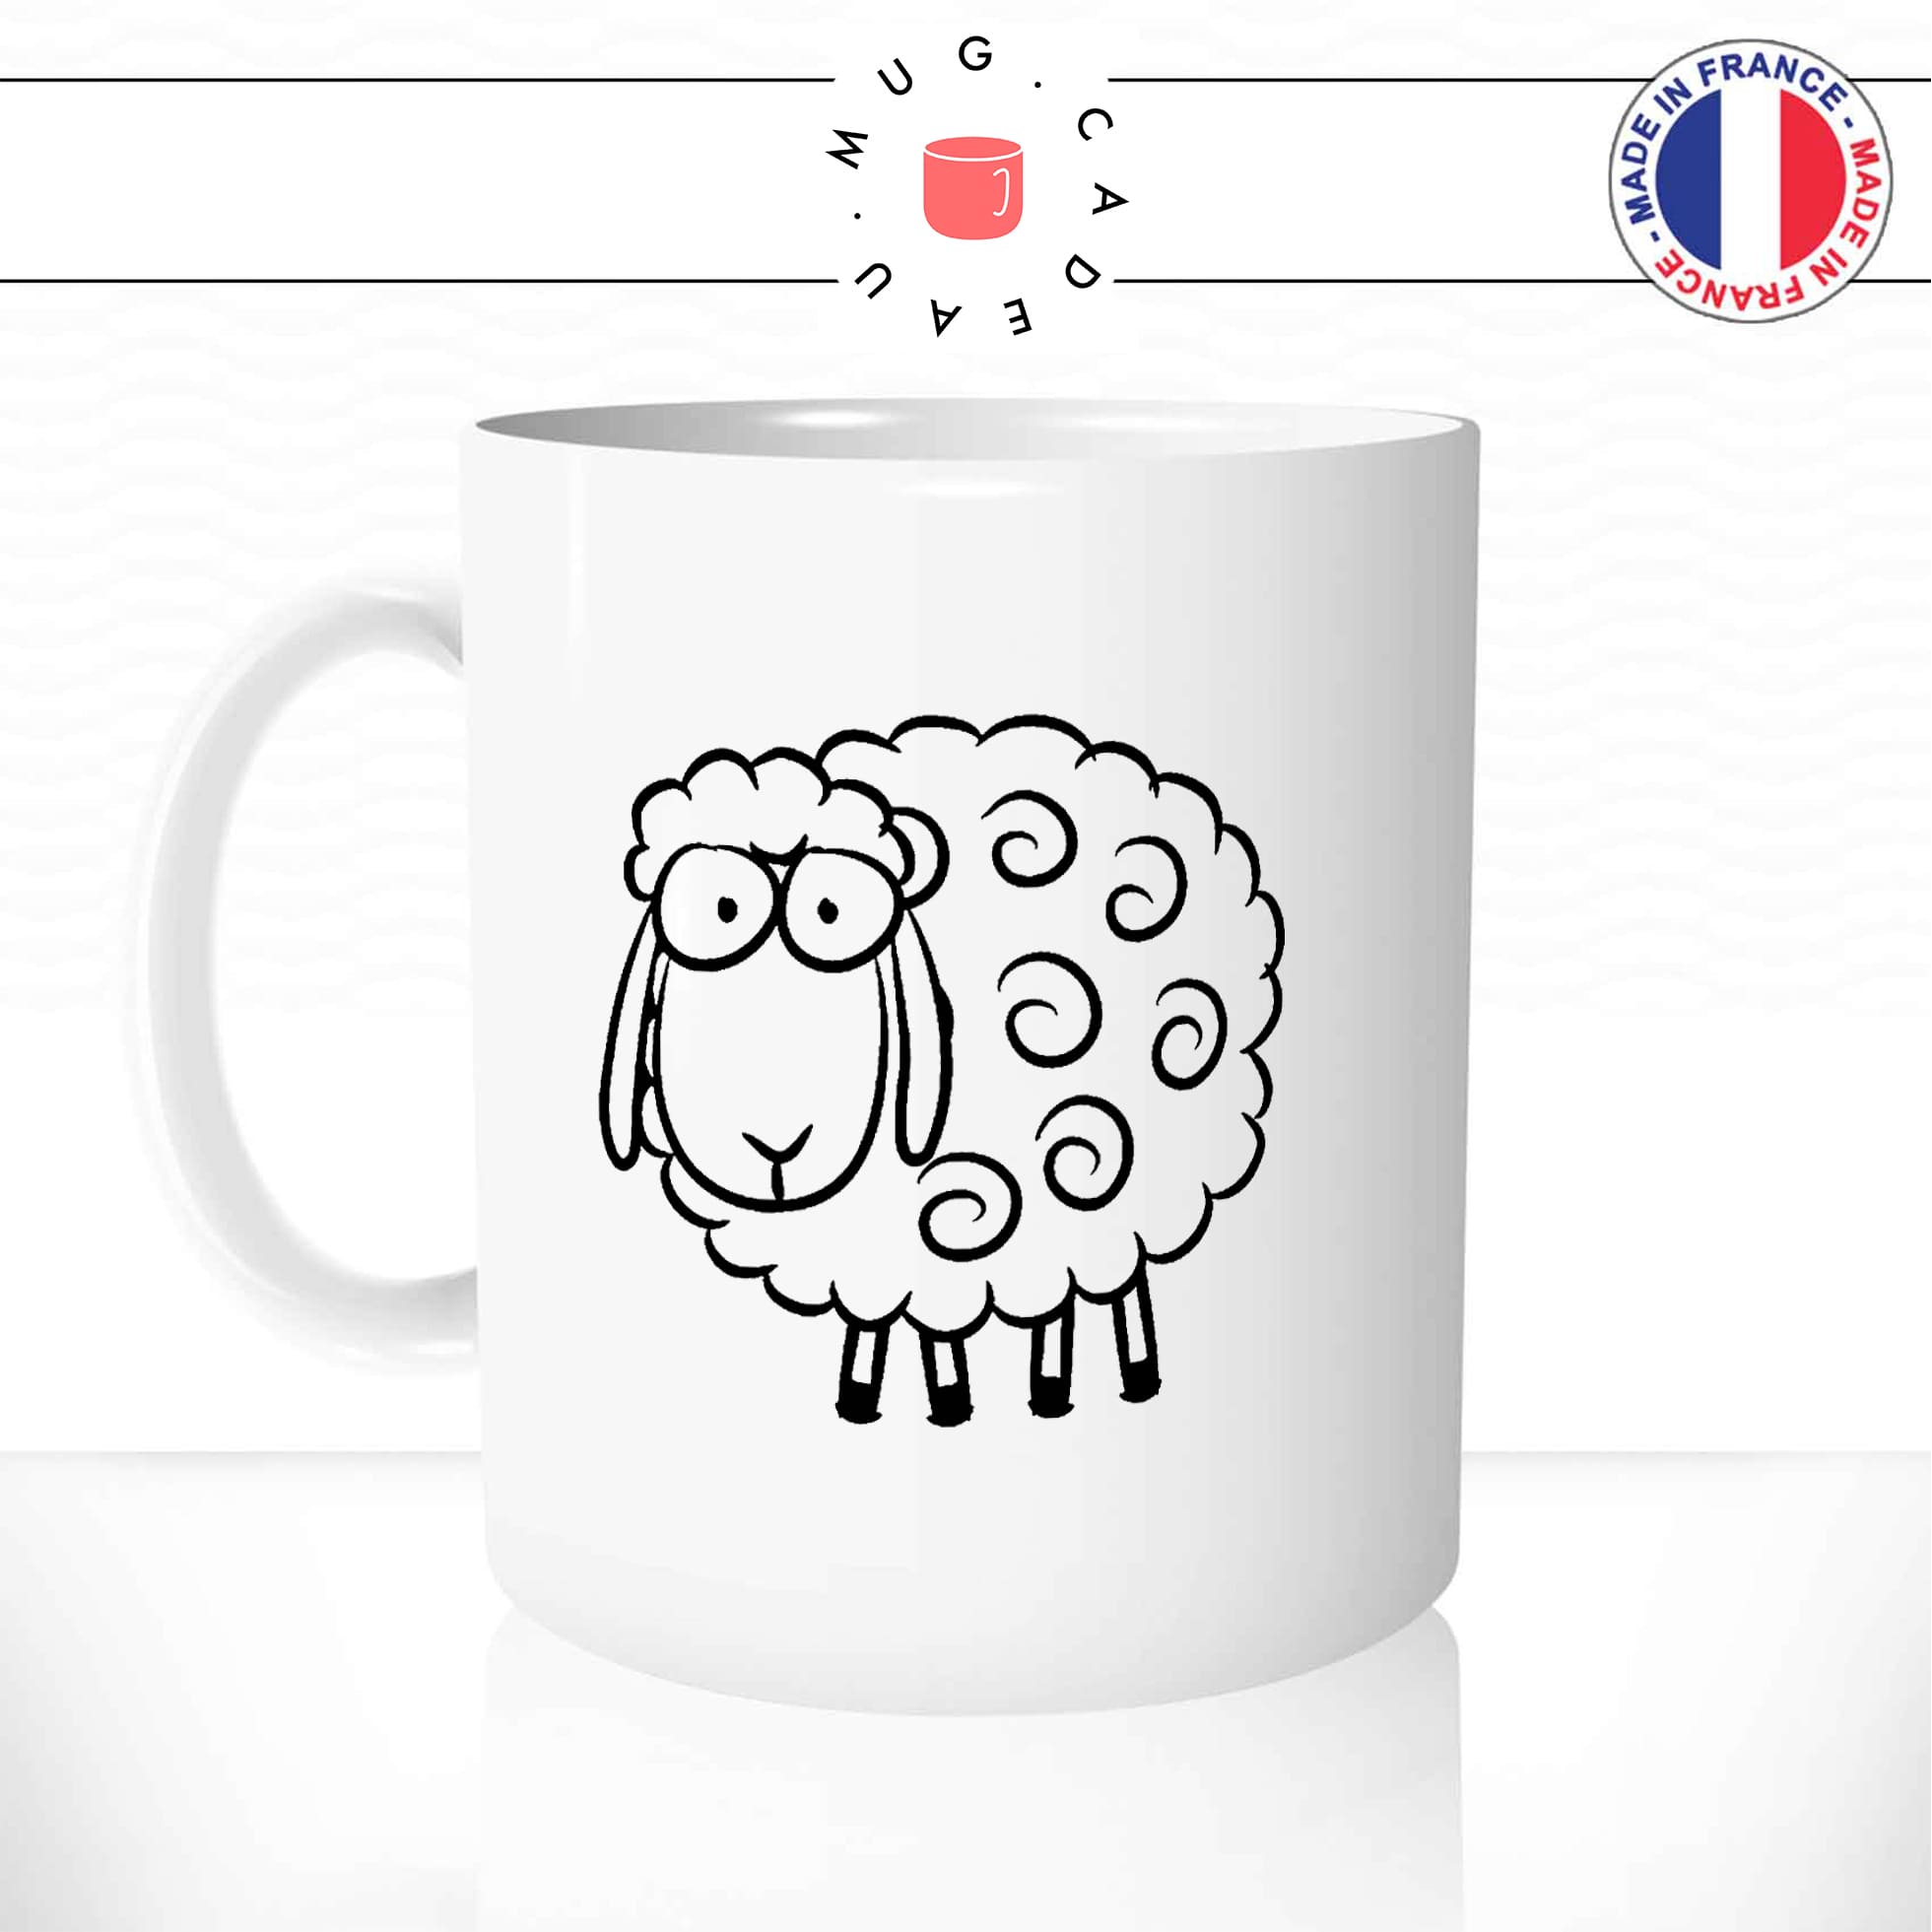 mug-tasse-blanc-mouton-animal-suiveur-social-panurge-politique-gilet-jaune-humour-fun-idée-cadeau-originale-cool